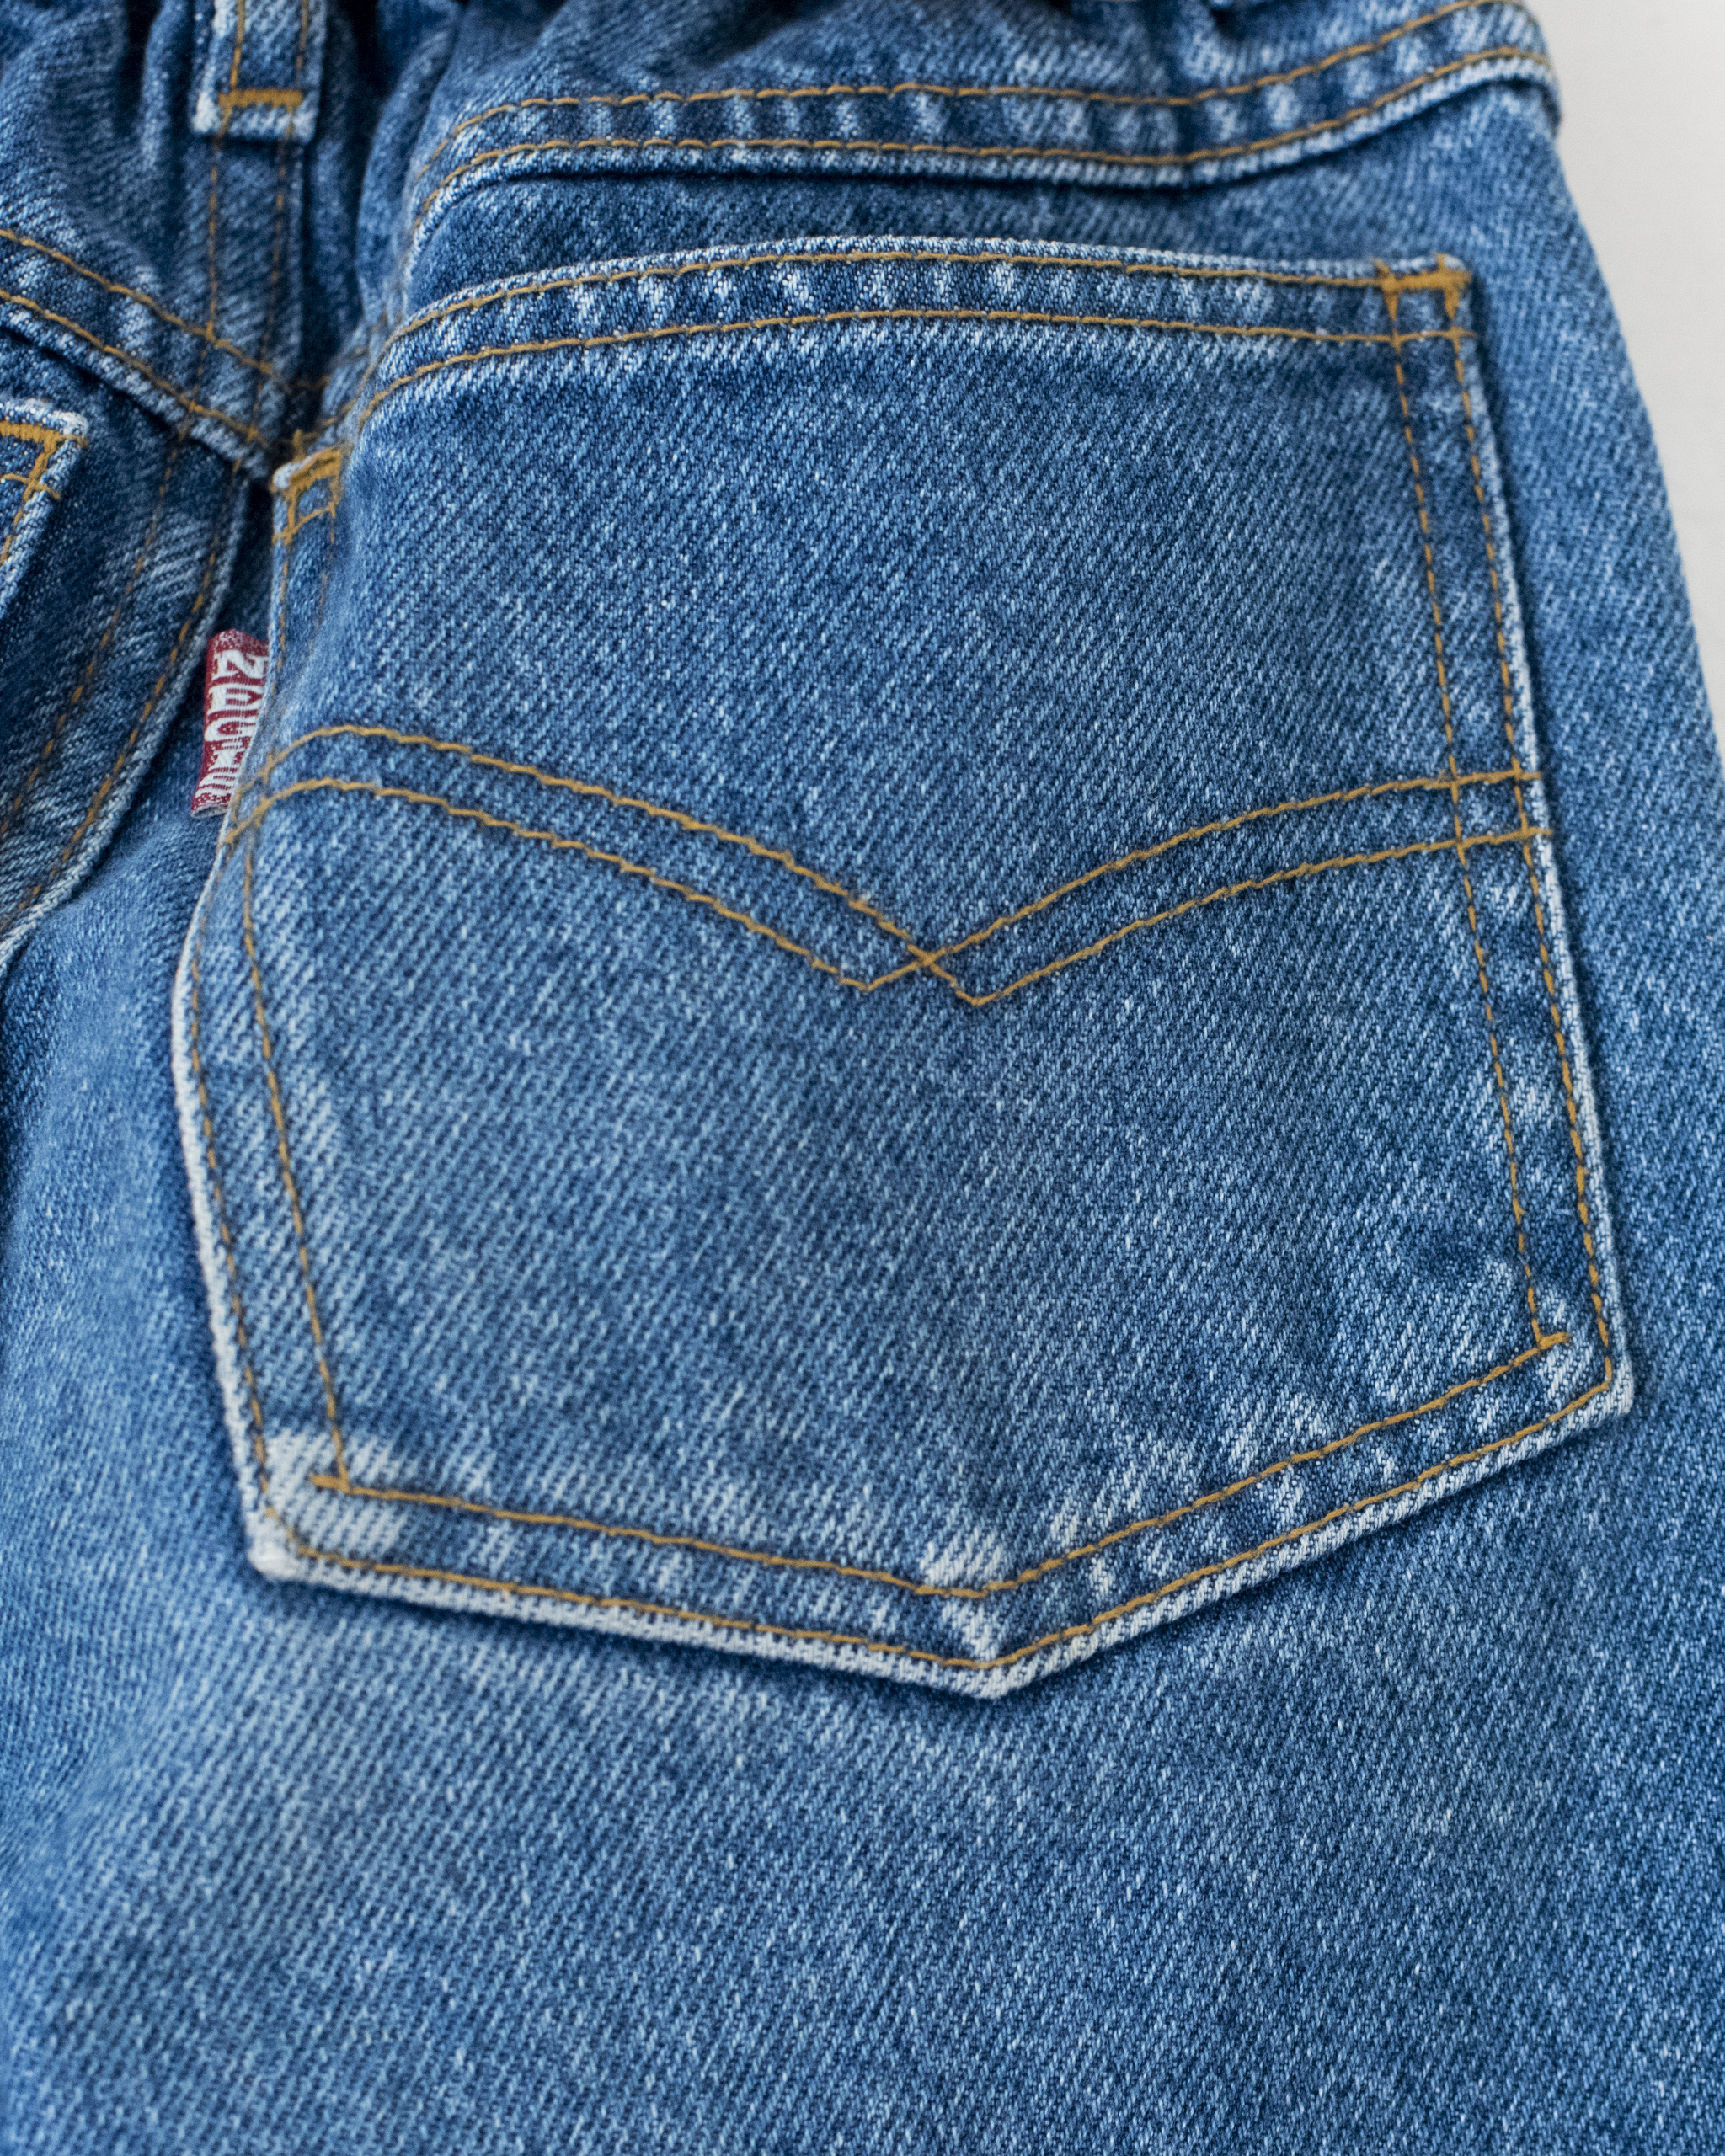 ג׳ינס מתוק עם ירחים רקומים | 9-10 שנים